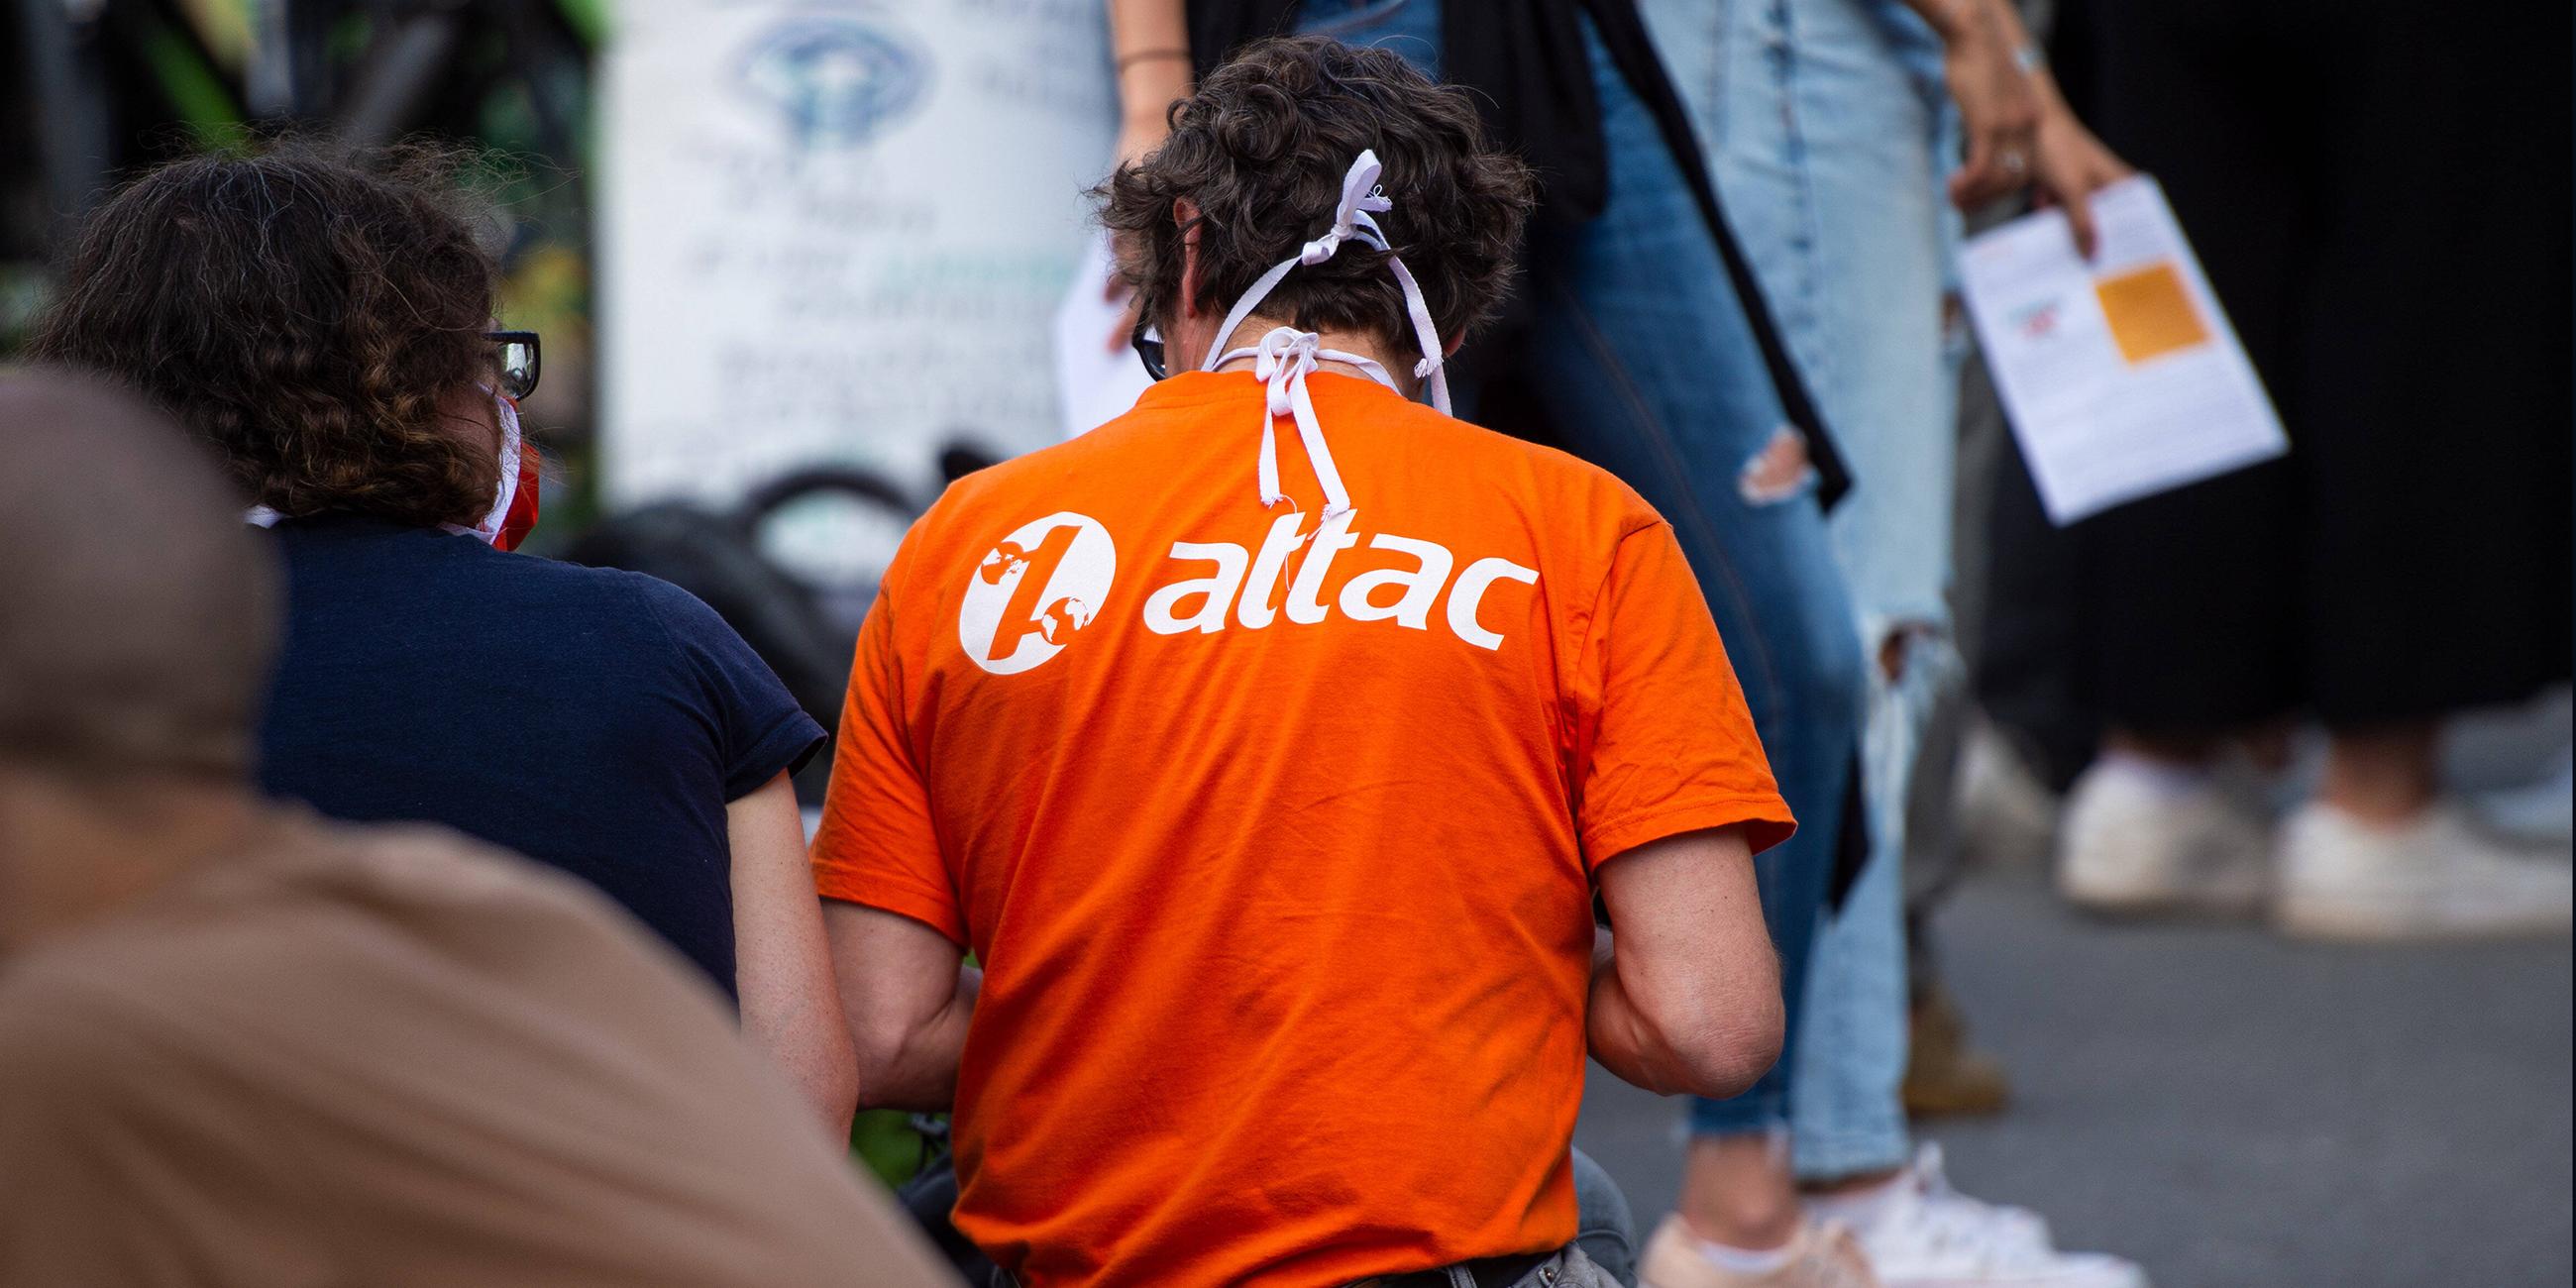 Aktivisten der Organisation "Attac" bei Protesten (Archivbild)